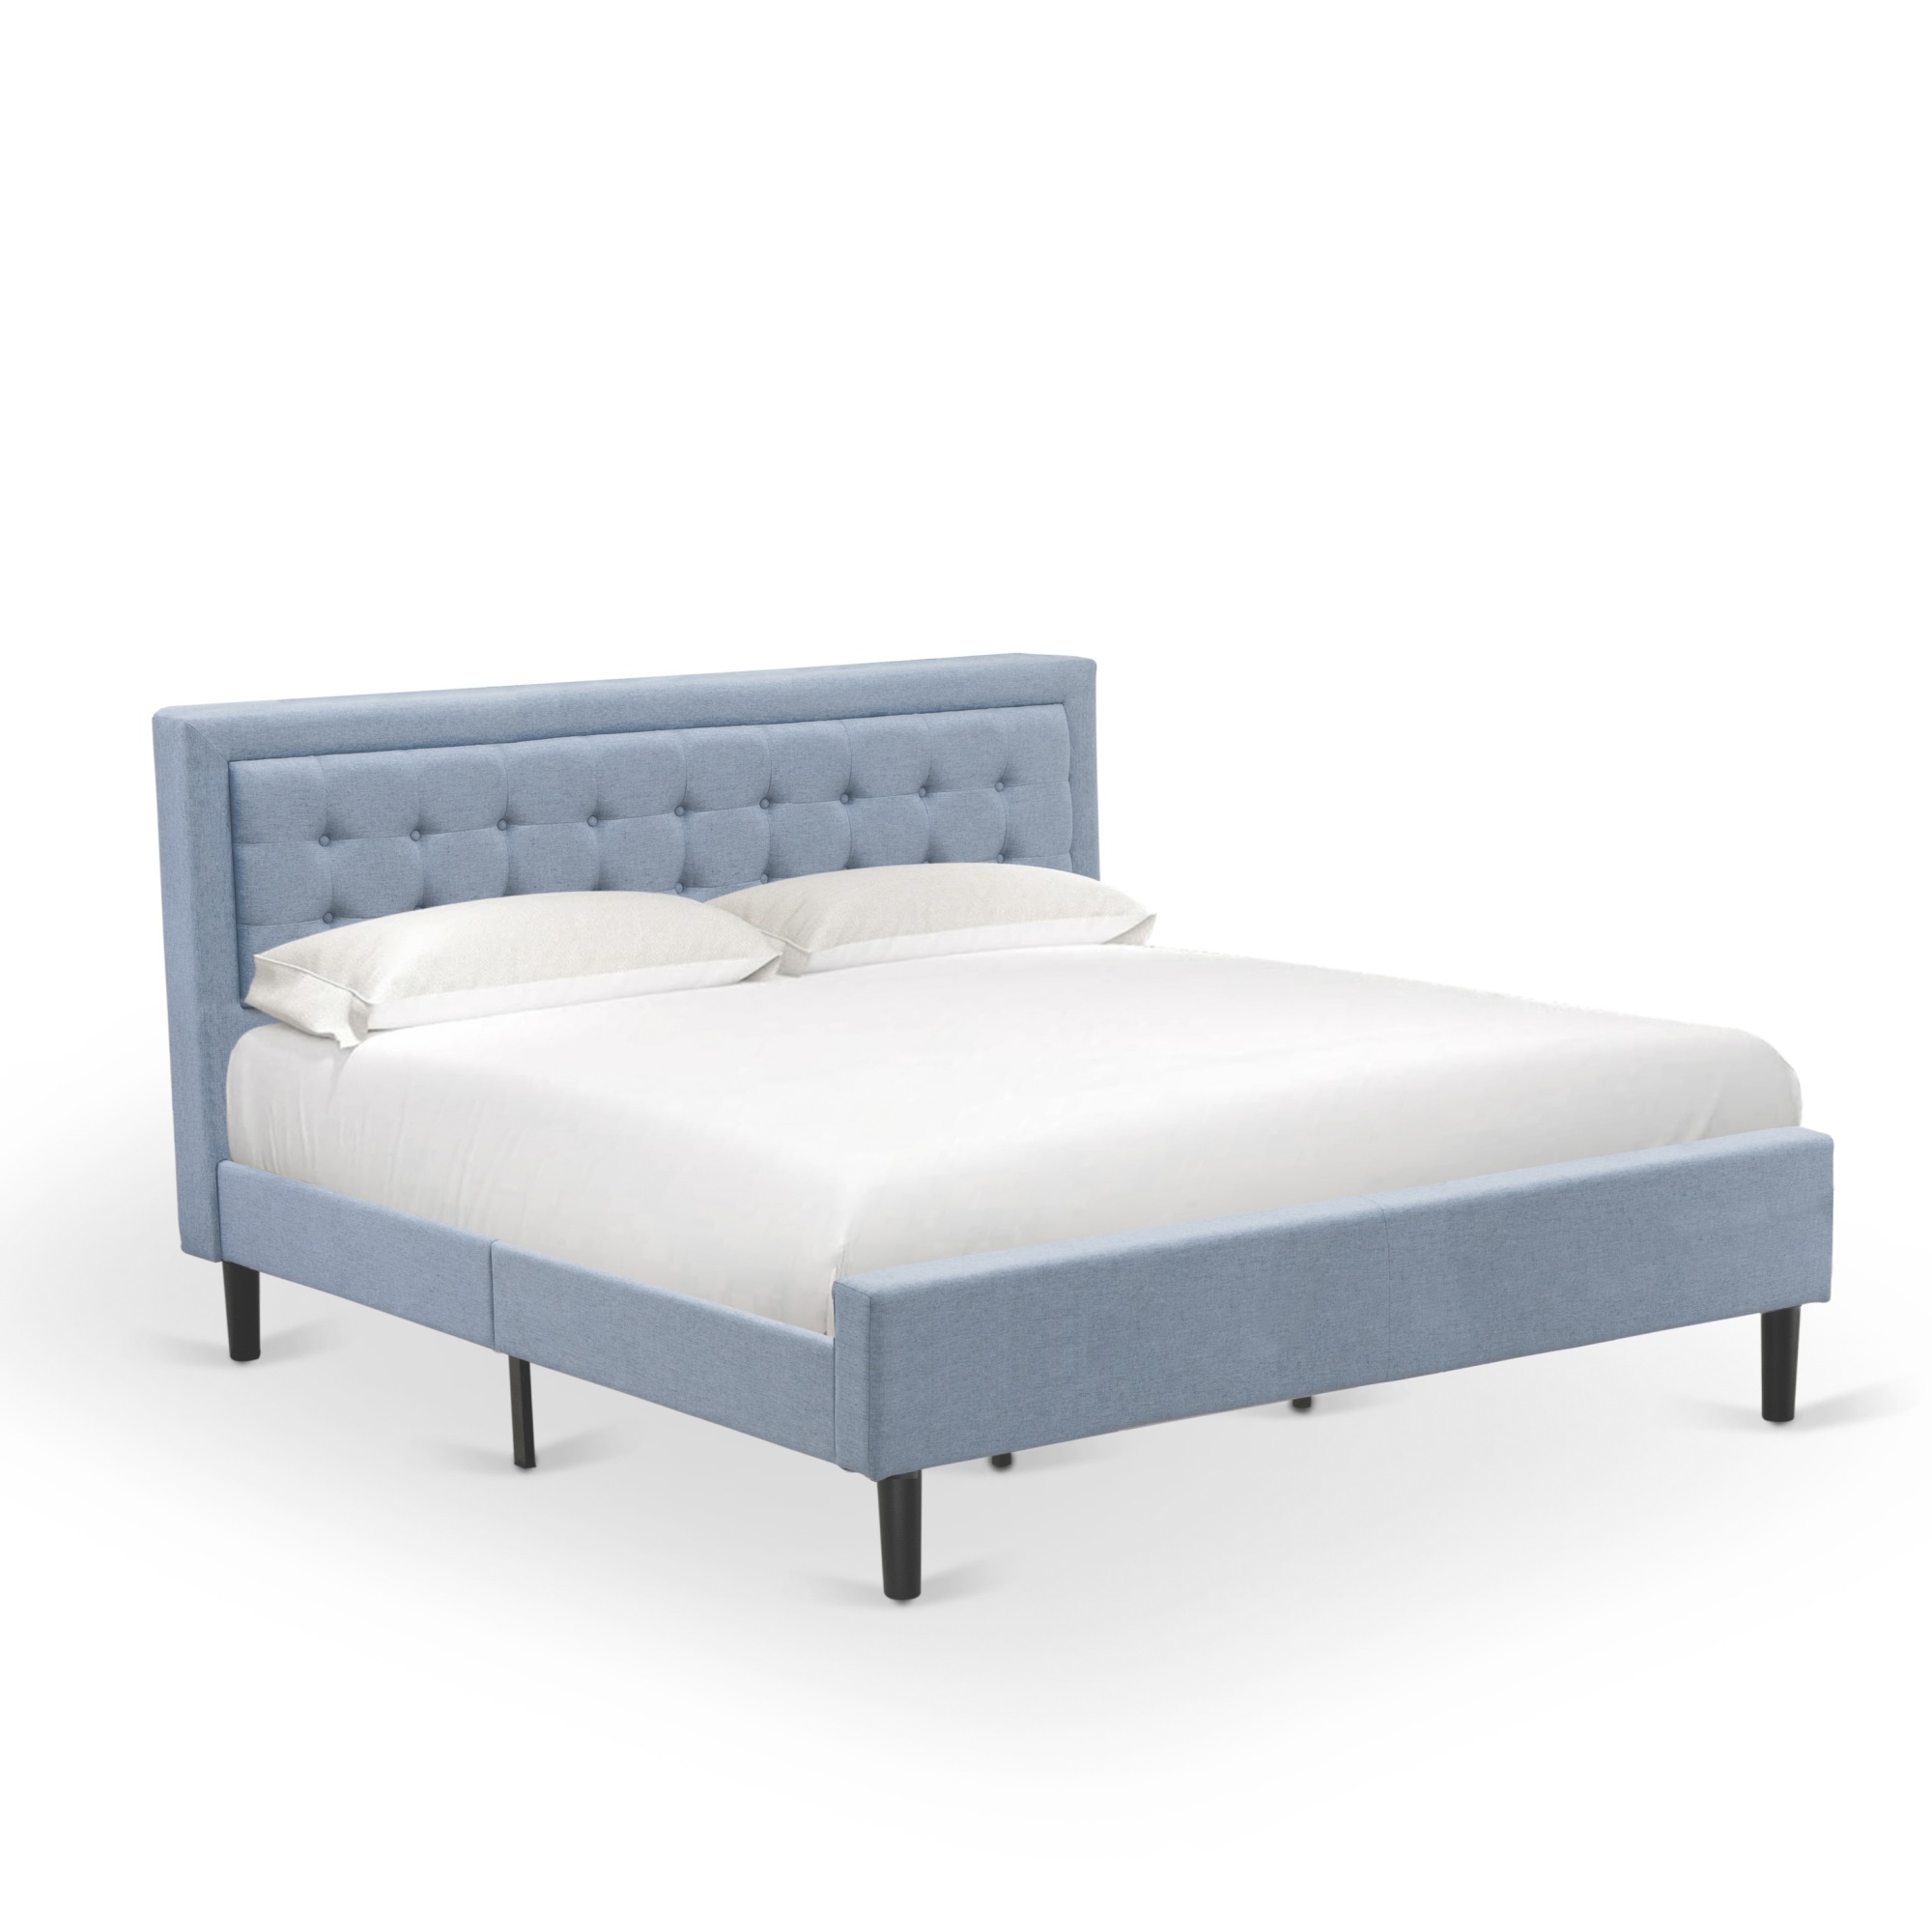 East West Furniture FNF-11-K Platform King Bed Frame - Denim Blue Linen Fabric Upholestered Bed Headboard with Button Tufted T